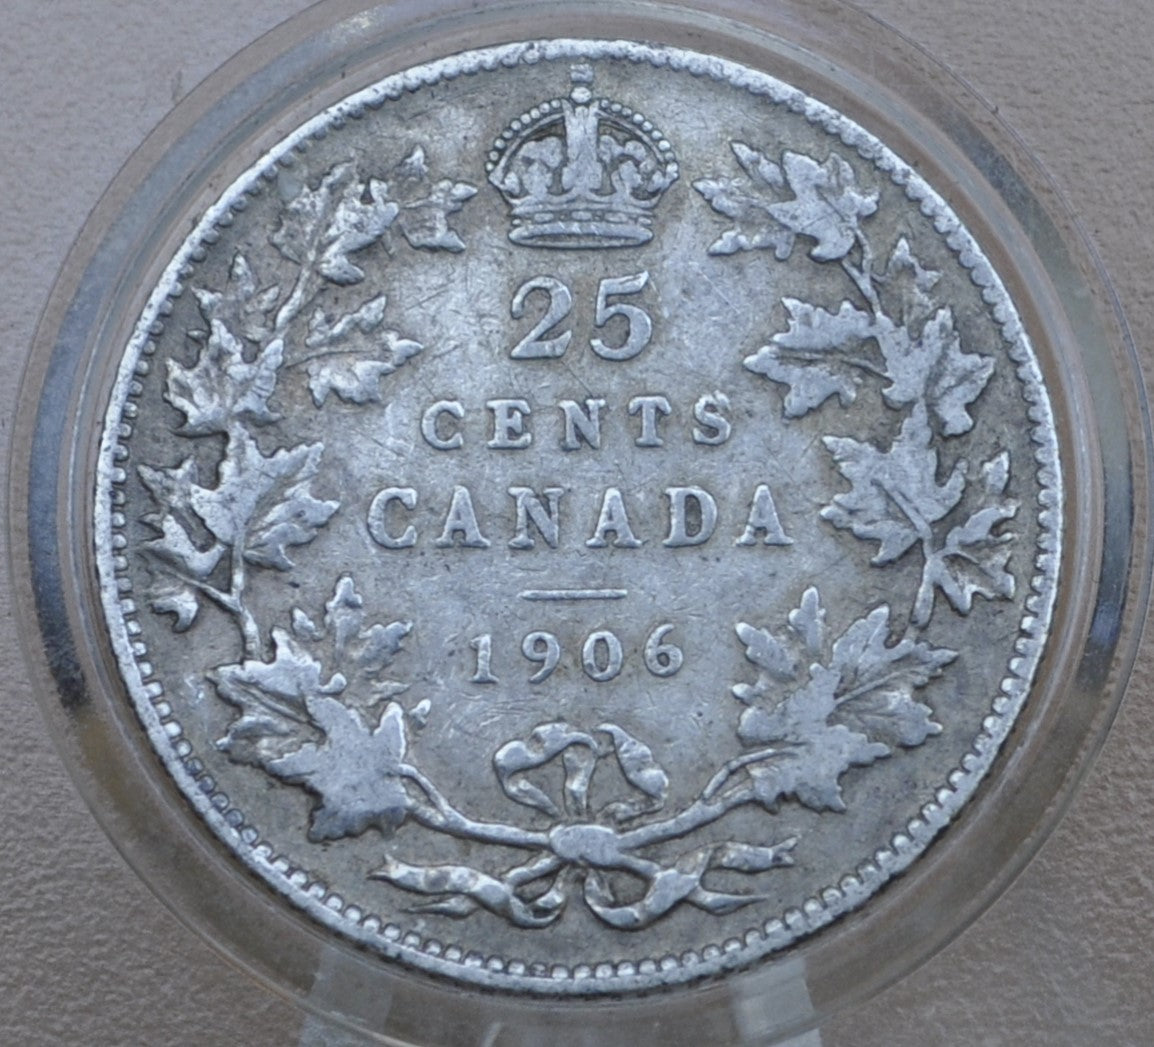 1906 Canadian Silver Quarter - VG (Very Good) Grade / Condition - King George - 92.5% Silver Quarter Canada - Canadian Coin Collection